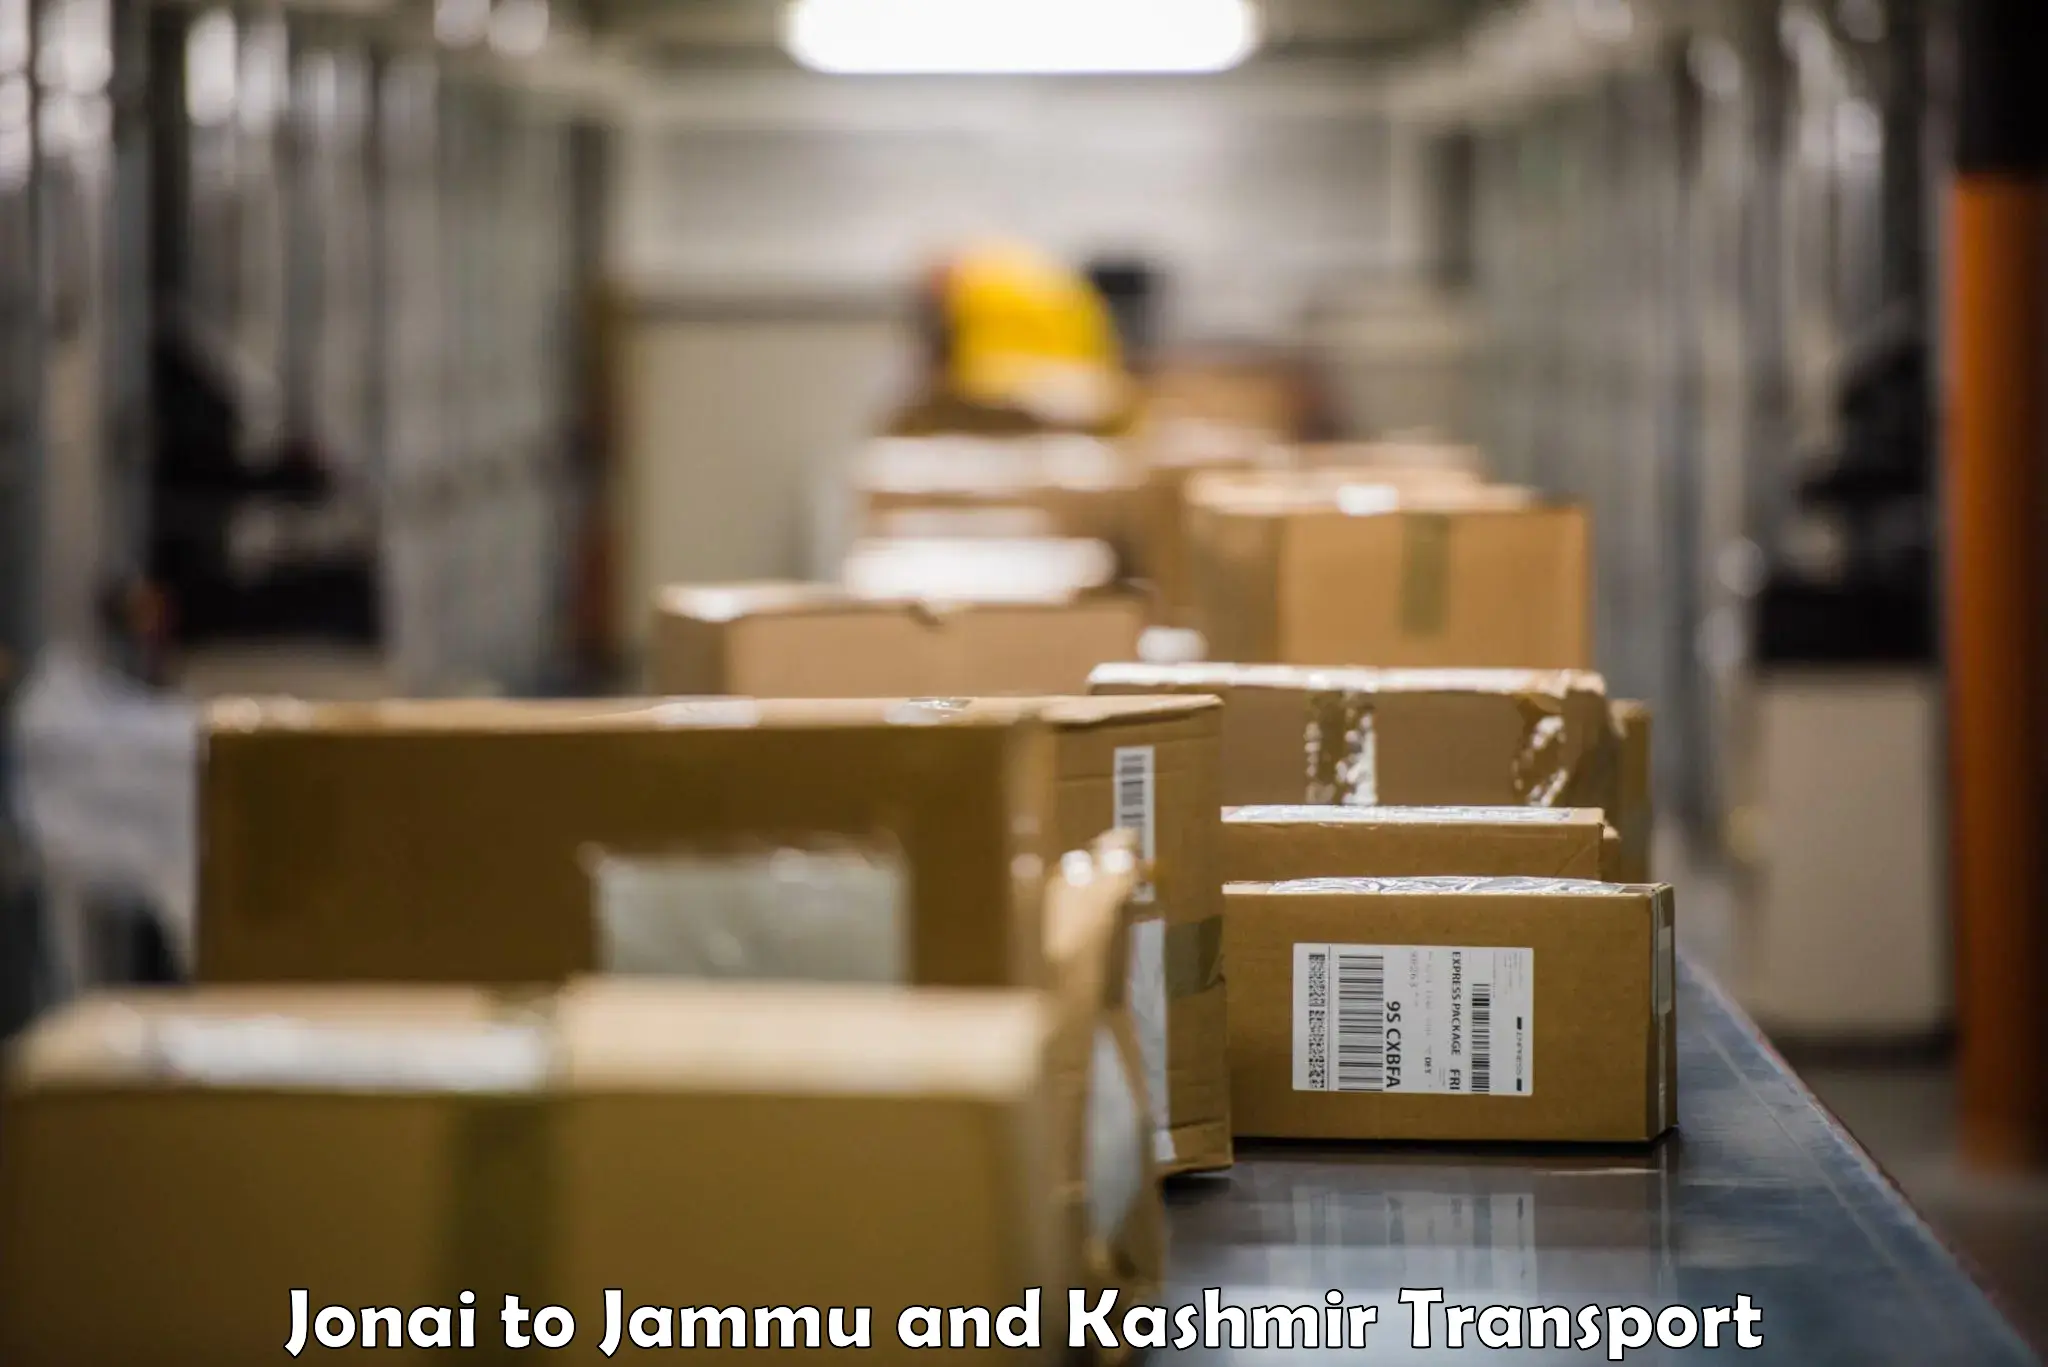 Cargo transport services Jonai to Jammu and Kashmir